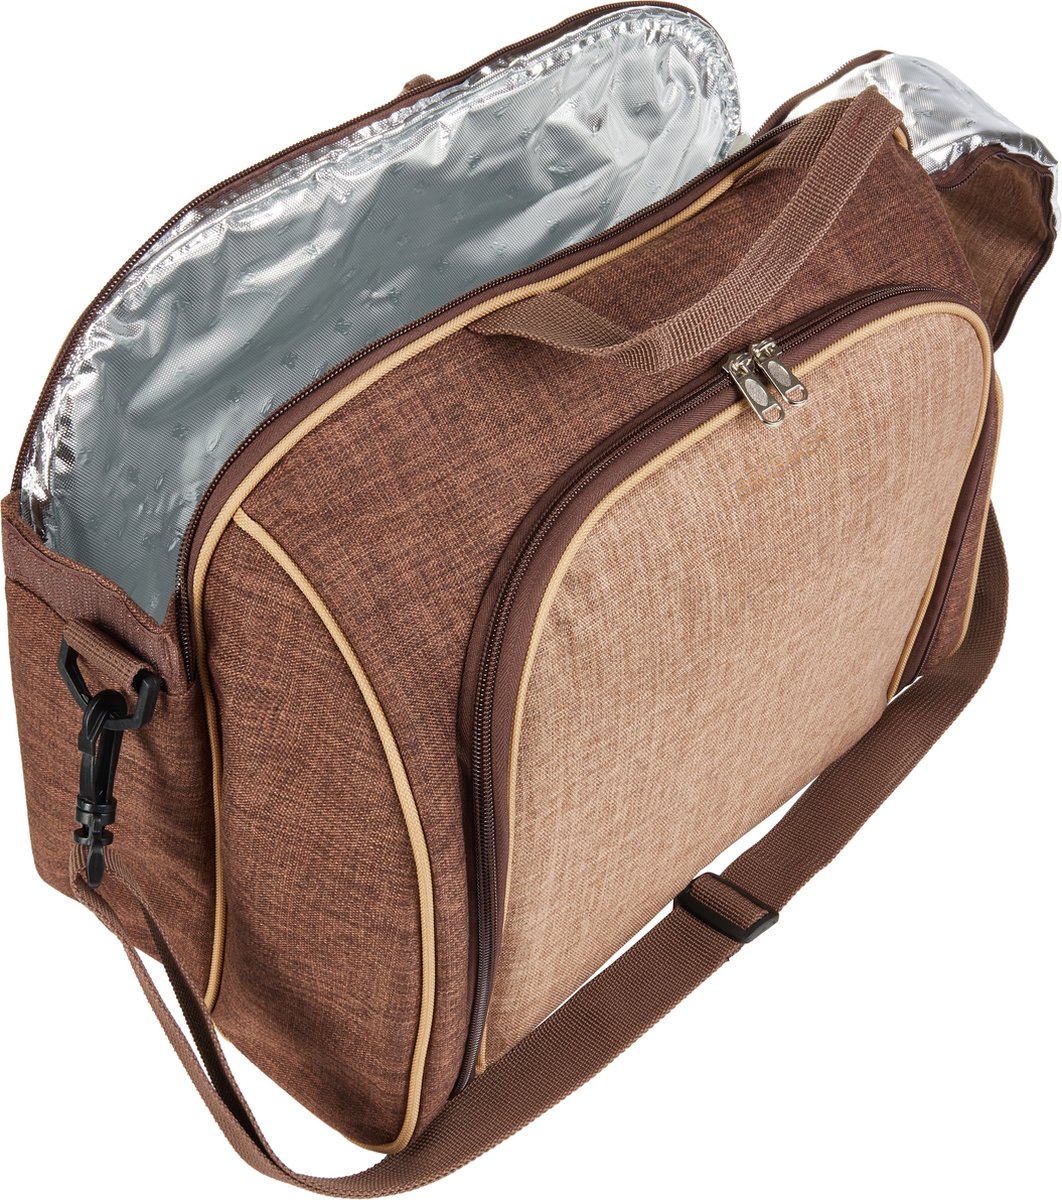 BRUBAKER | Picknicktasche | 4 Personen mit Kühlfach, tragbar als Duffeltasche oder Schultertasche | Braun | 38 × 30 x 21,5 cm | 30 Teile